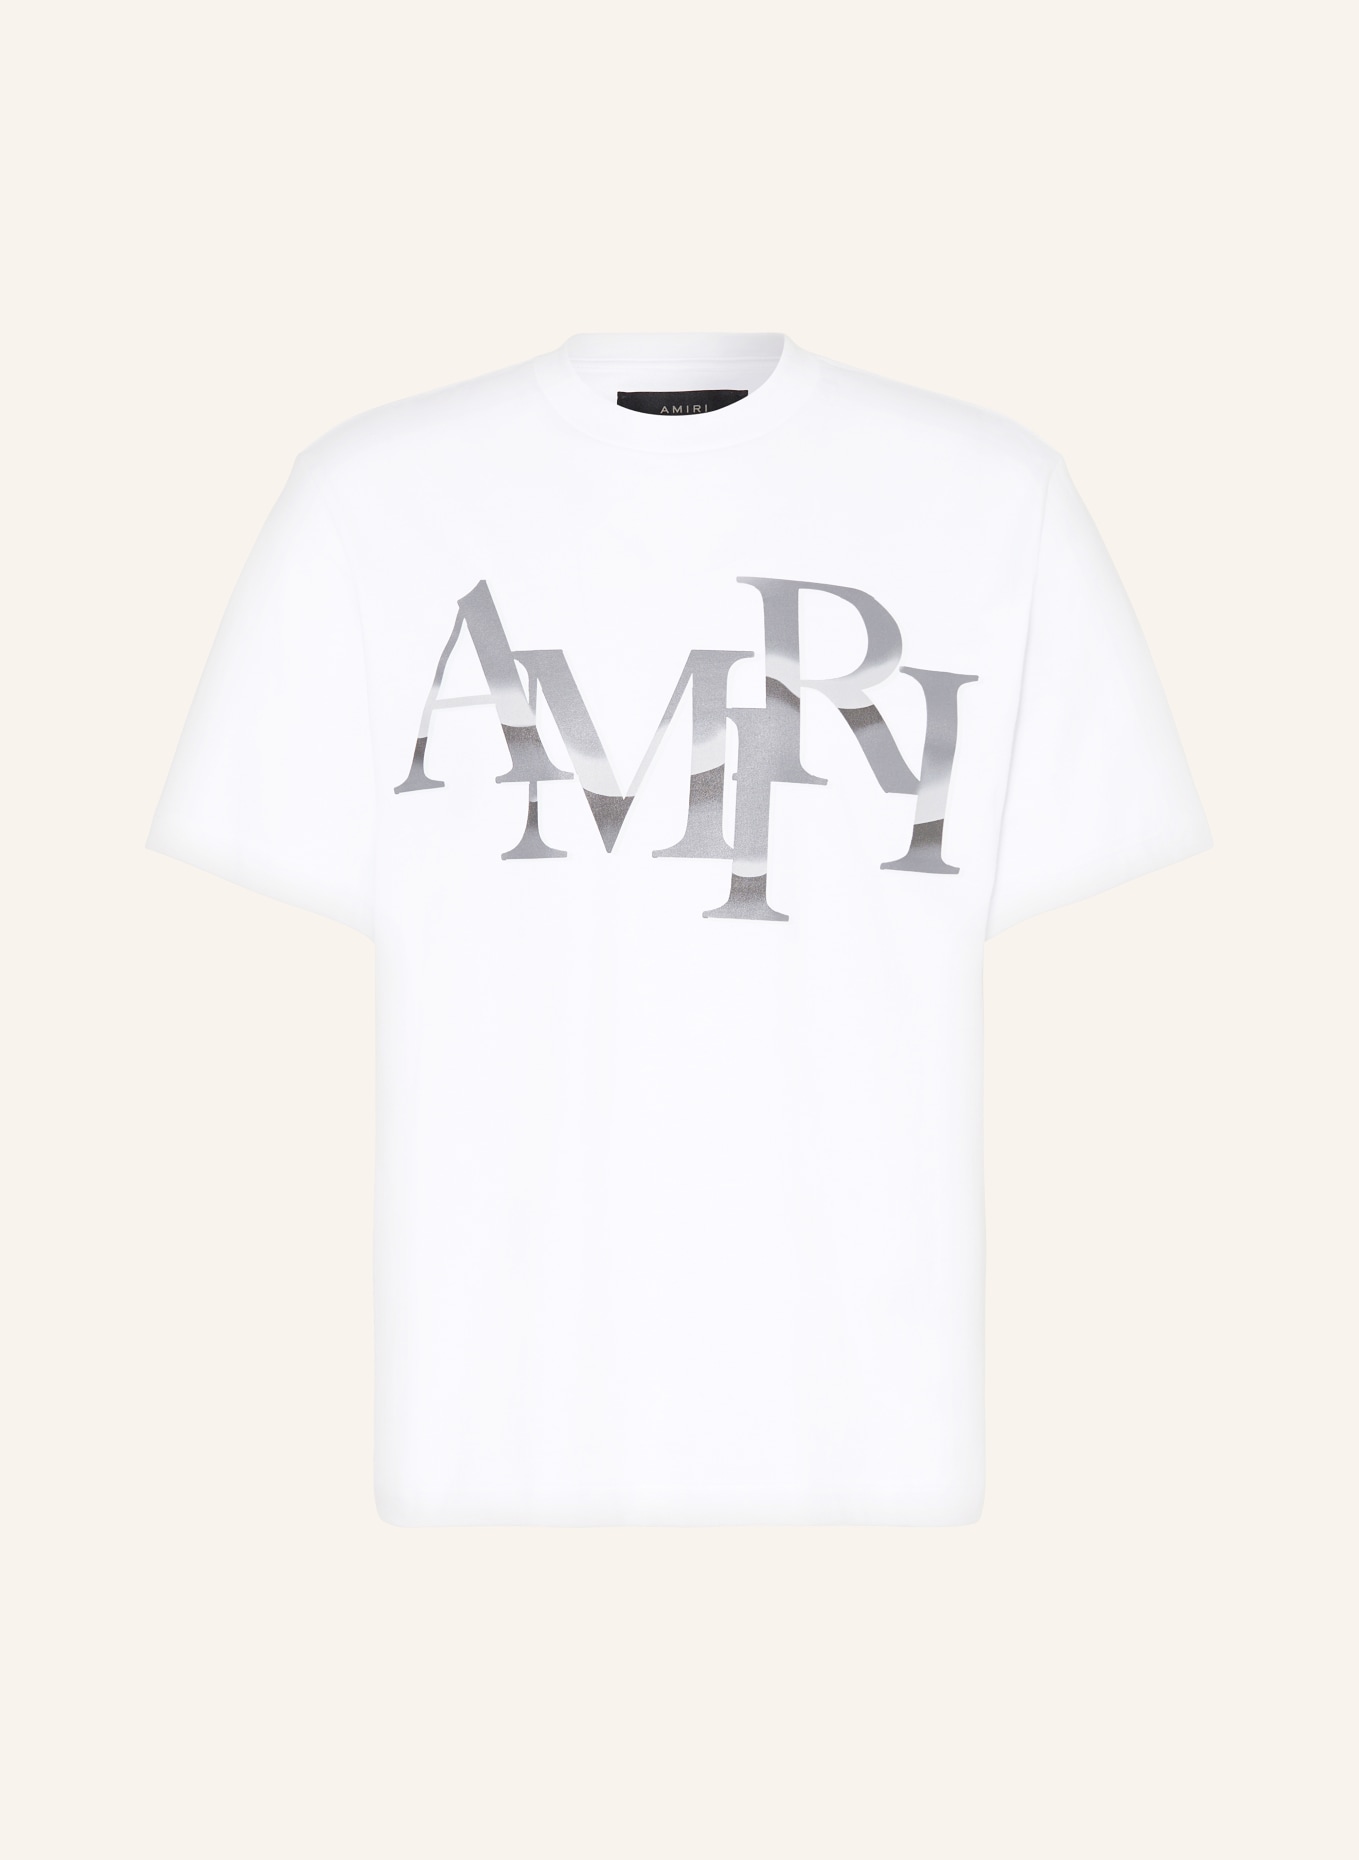 Amiri Shirt: A Tale of Luxury Streetwear插图